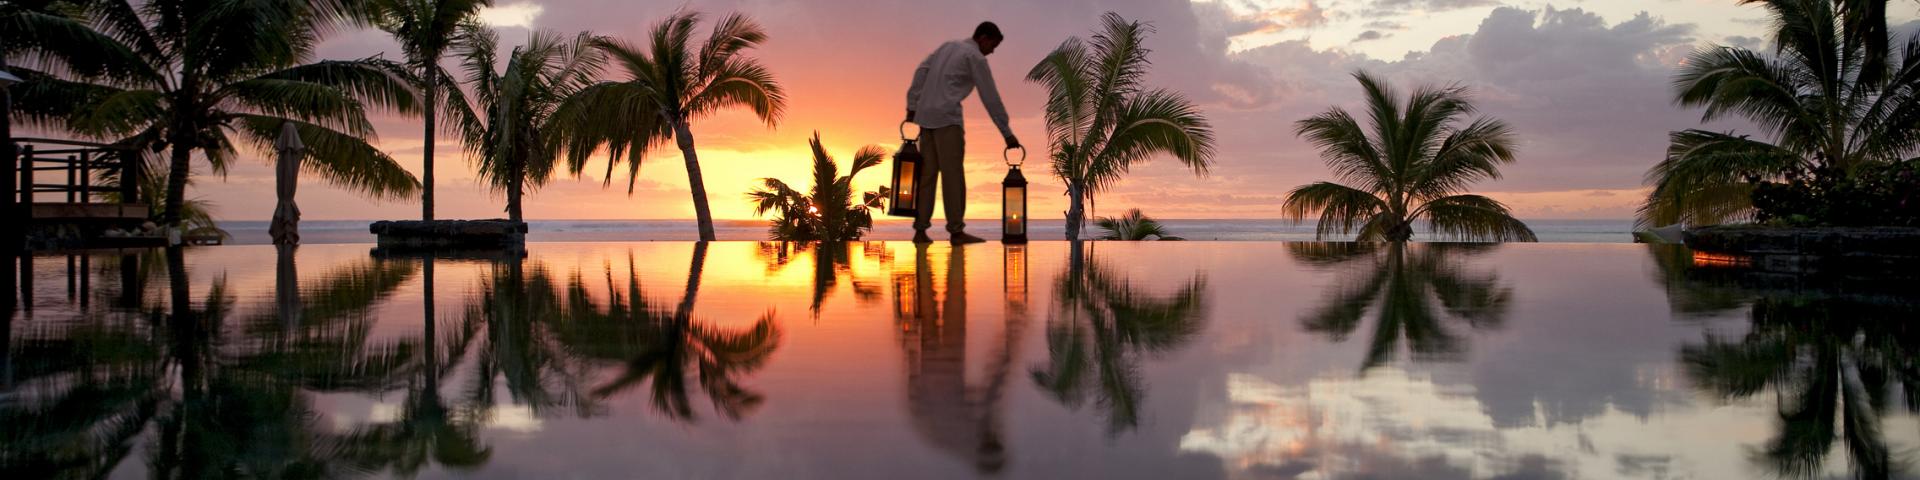 Hotel LUX* Le Morne - rezerwuj rajskie wakacje na Mauritiusie